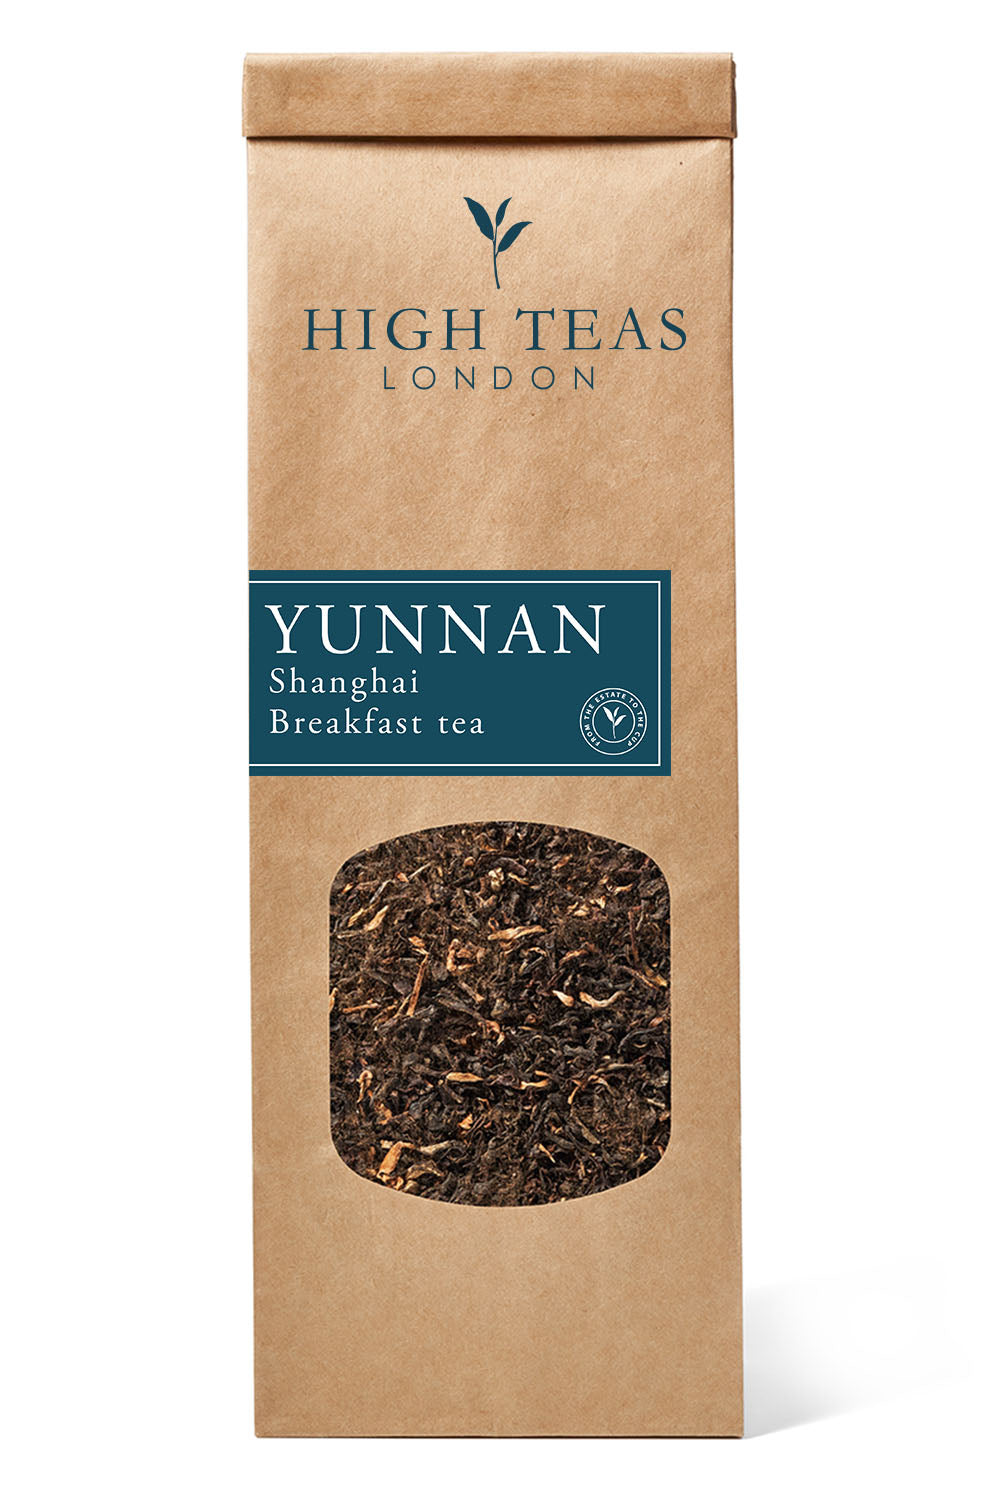 Yunnan Imperial "Gold Tip" aka Shanghai Breakfast Tea-50g-Loose Leaf Tea-High Teas